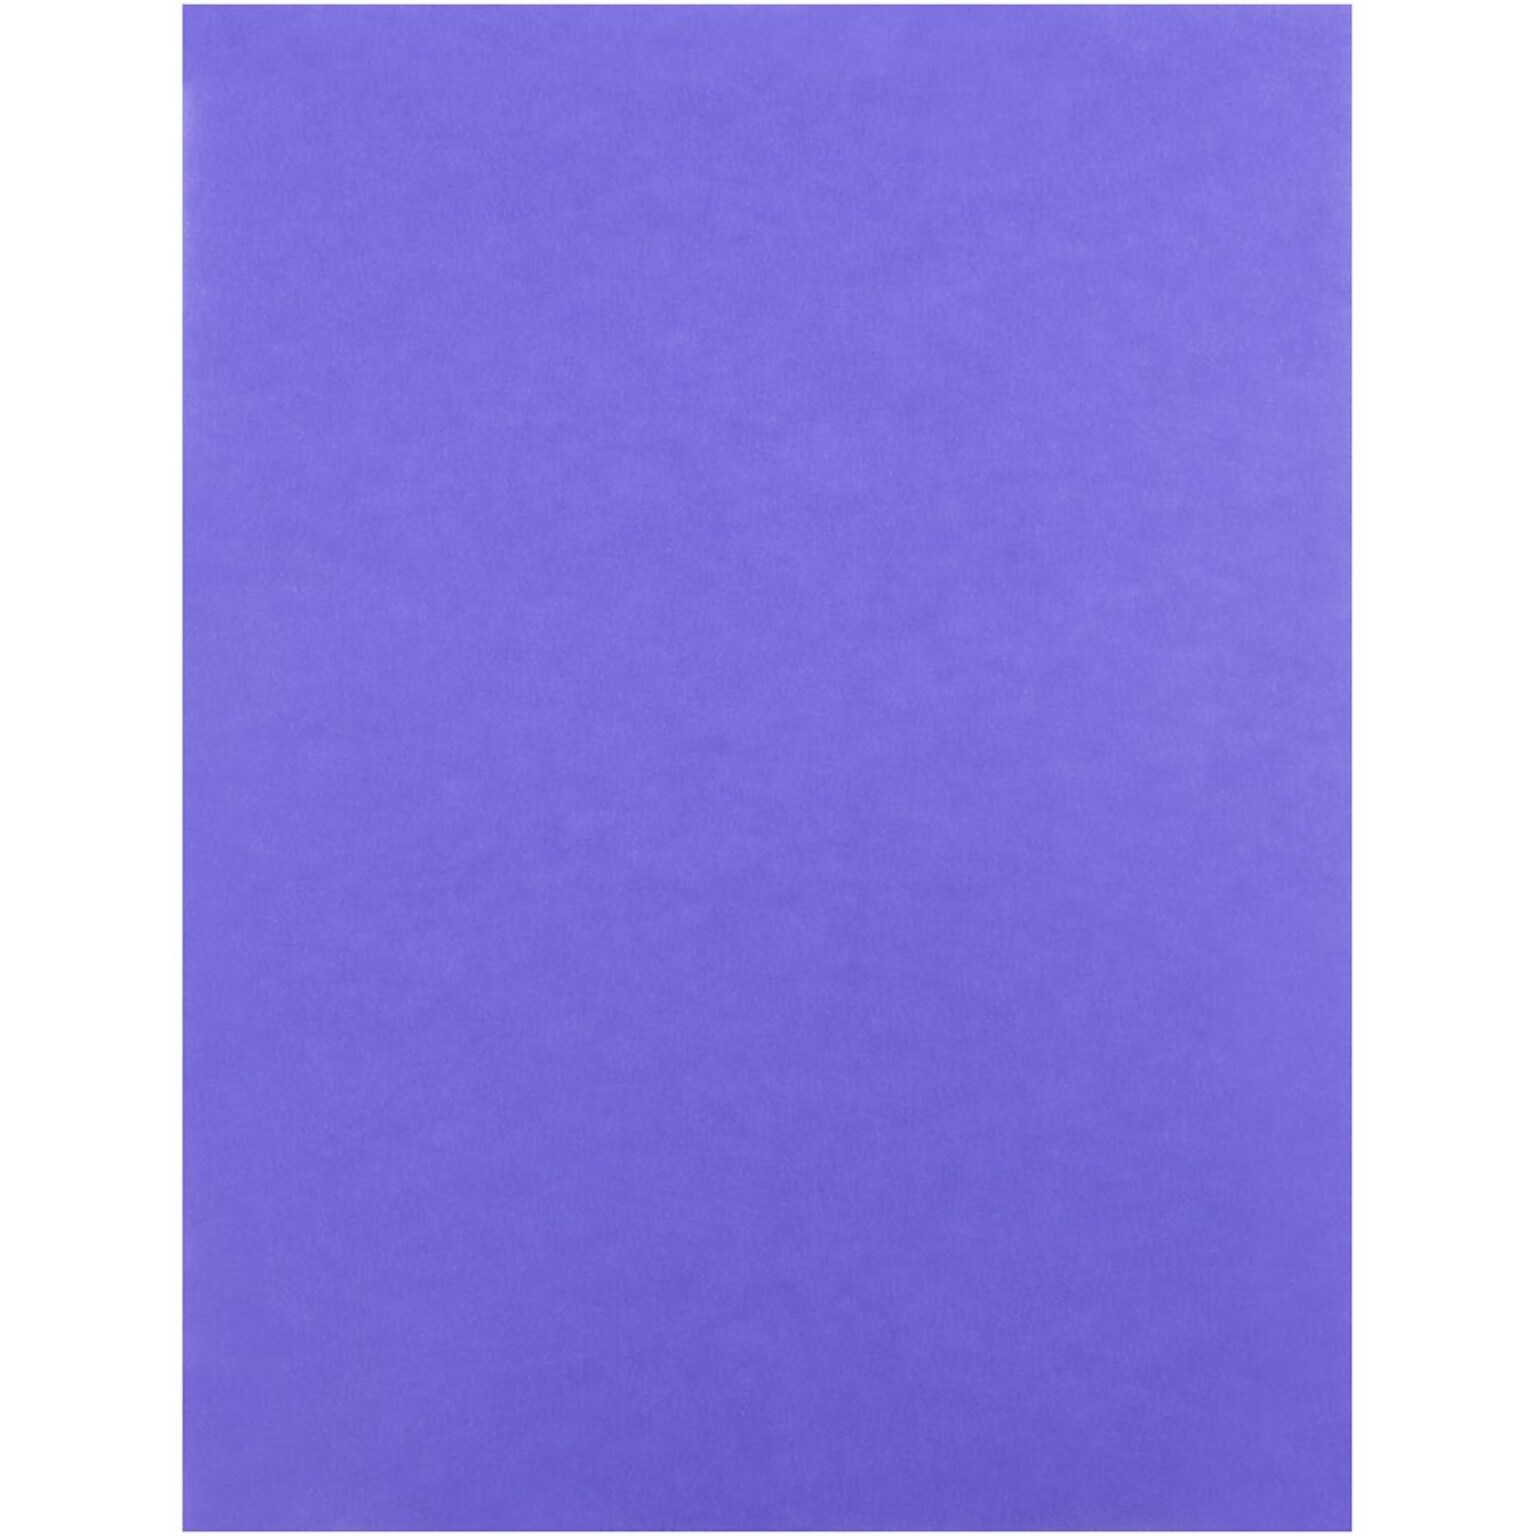 JAM Paper® Translucent Vellum Paper, 8.5 x 11, 30lb Blue, 100/Pack (301775)